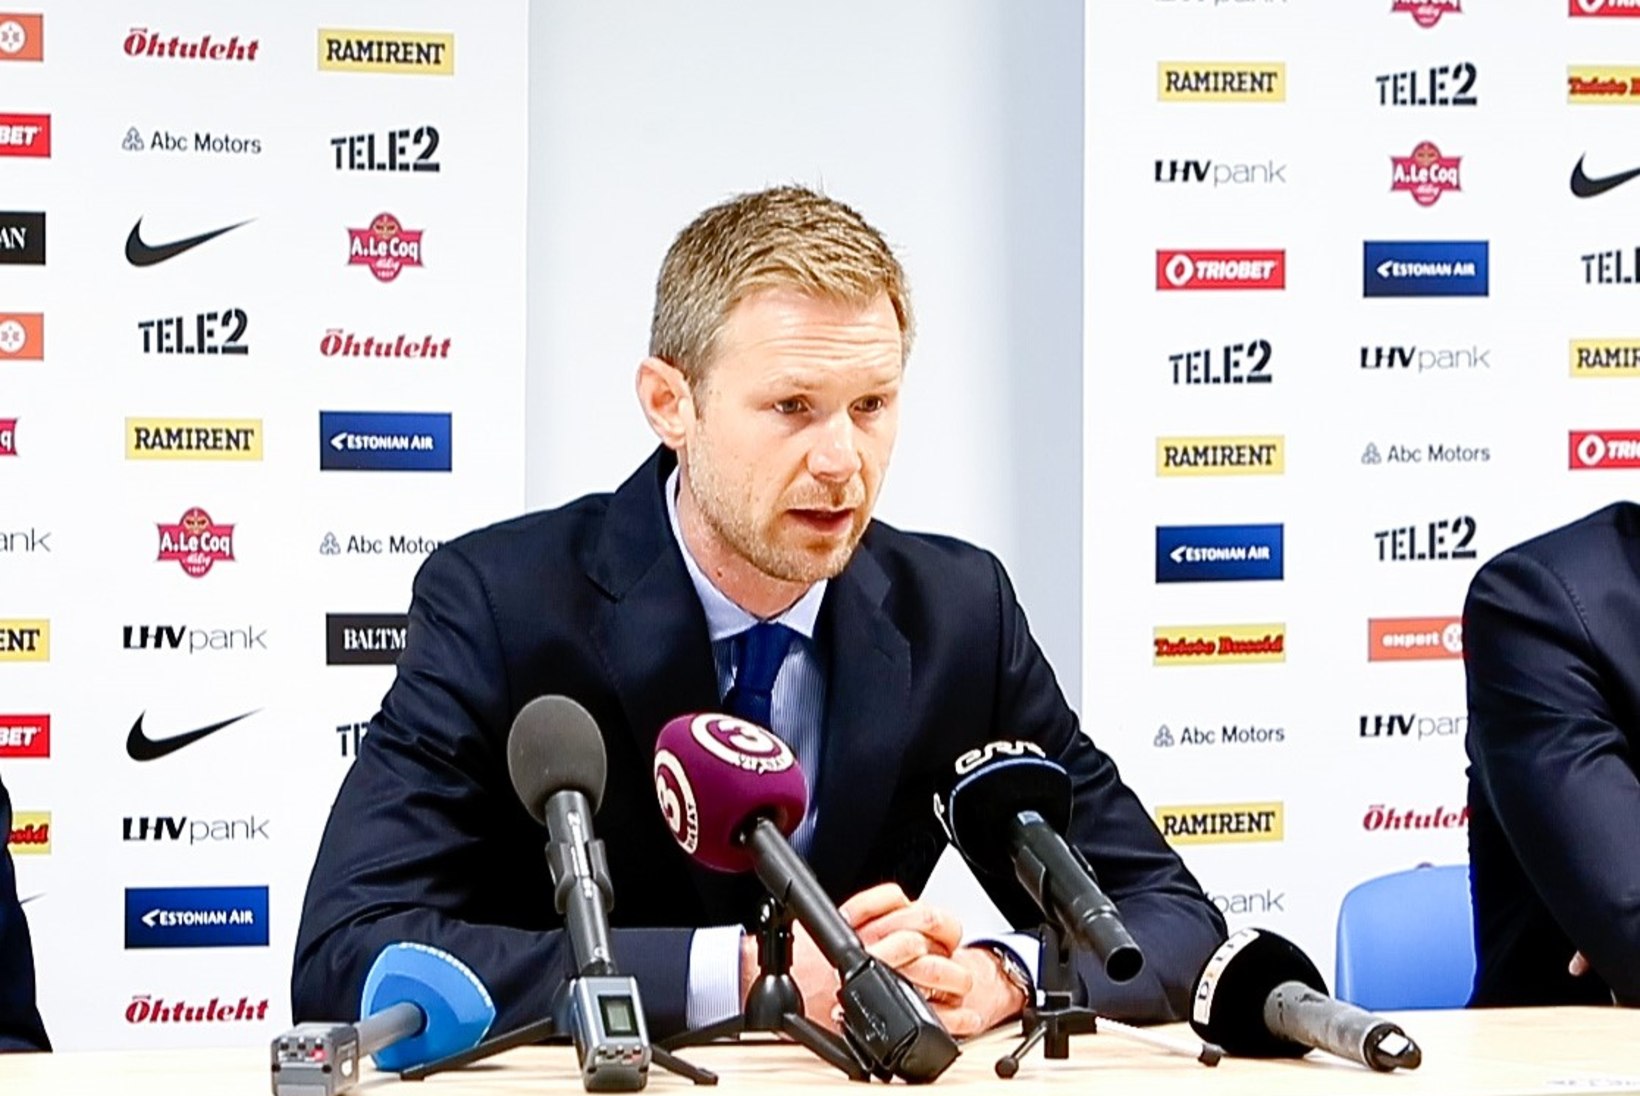 Pehrssoni kommentaar Ojamaa väljajätmise ja Eesti kõrgliiga mängijate 68% osakaalu kohta koondises